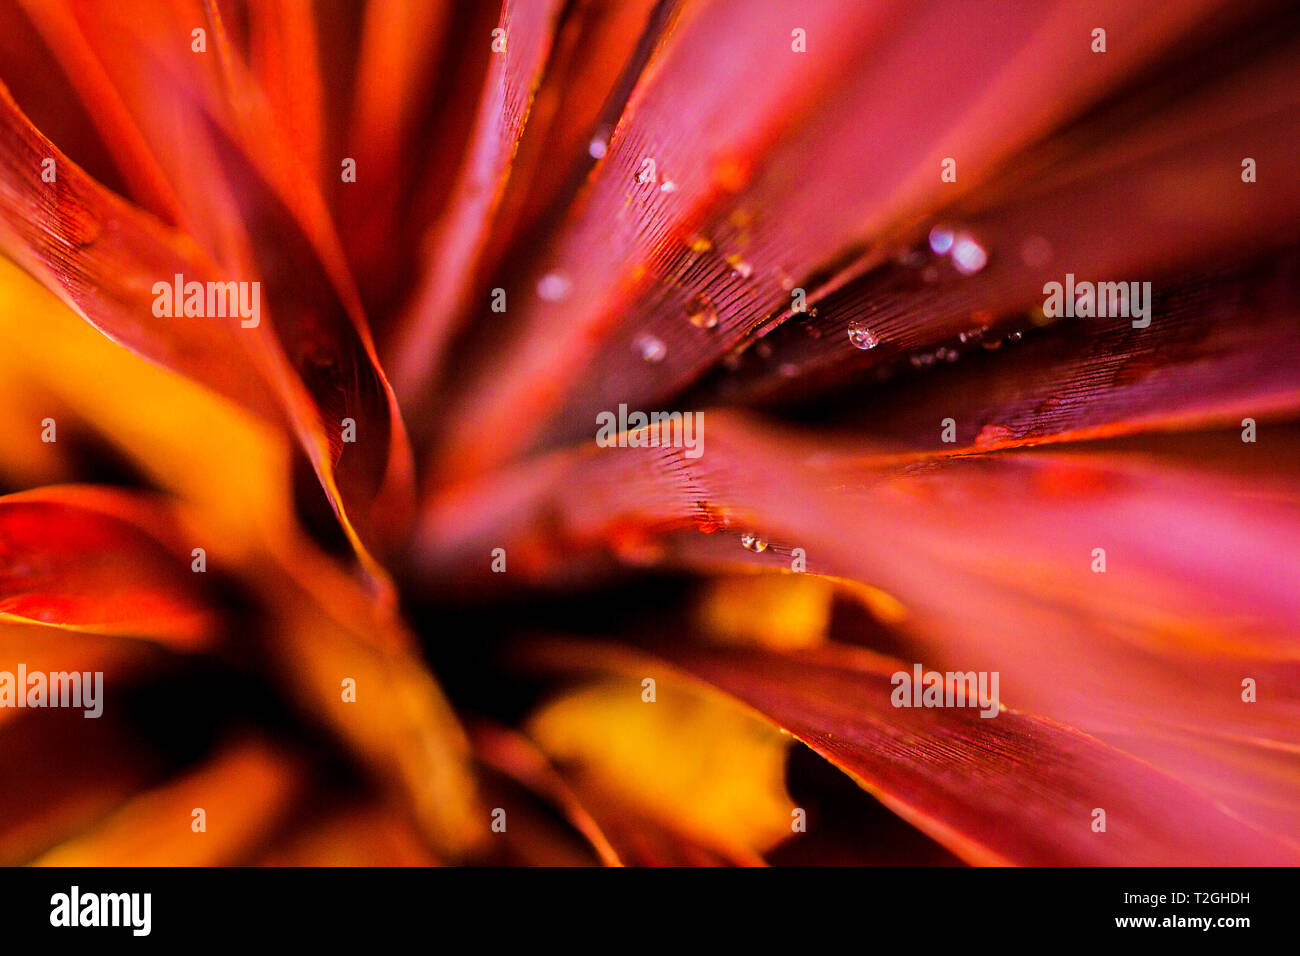 Macro, close-up de Cordyline australis Red Star laisse couvert de gouttes d'eau. Feuilles de palmier. Thème Tropical. Banque D'Images